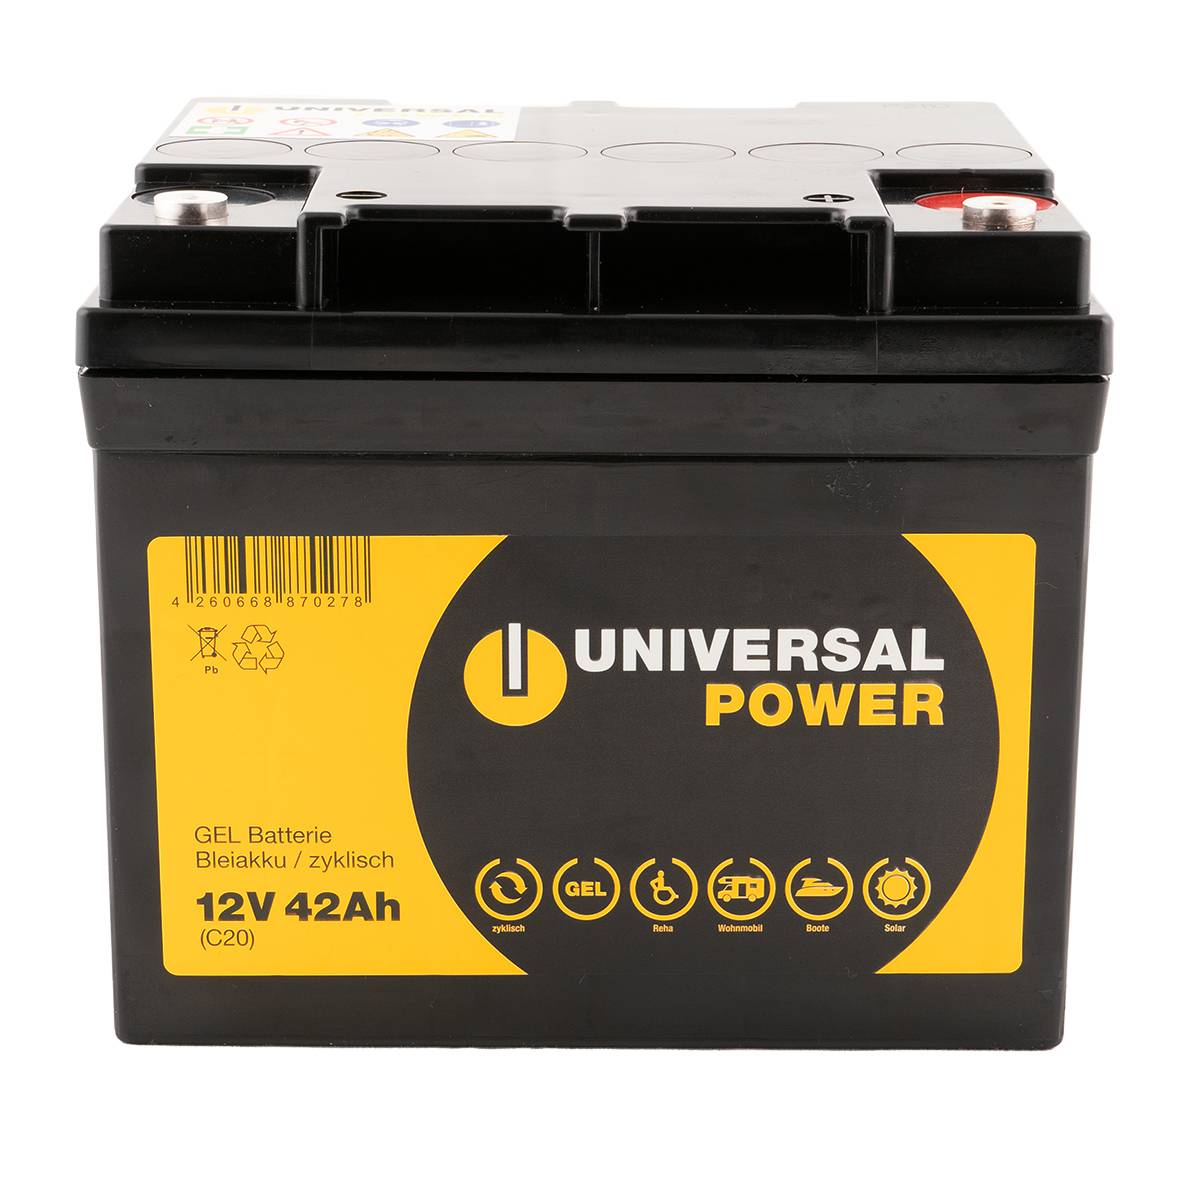 Universal Power UPG12-42 12V 42Ah (C20) Gel Batterie wartungsfrei, zyklisch